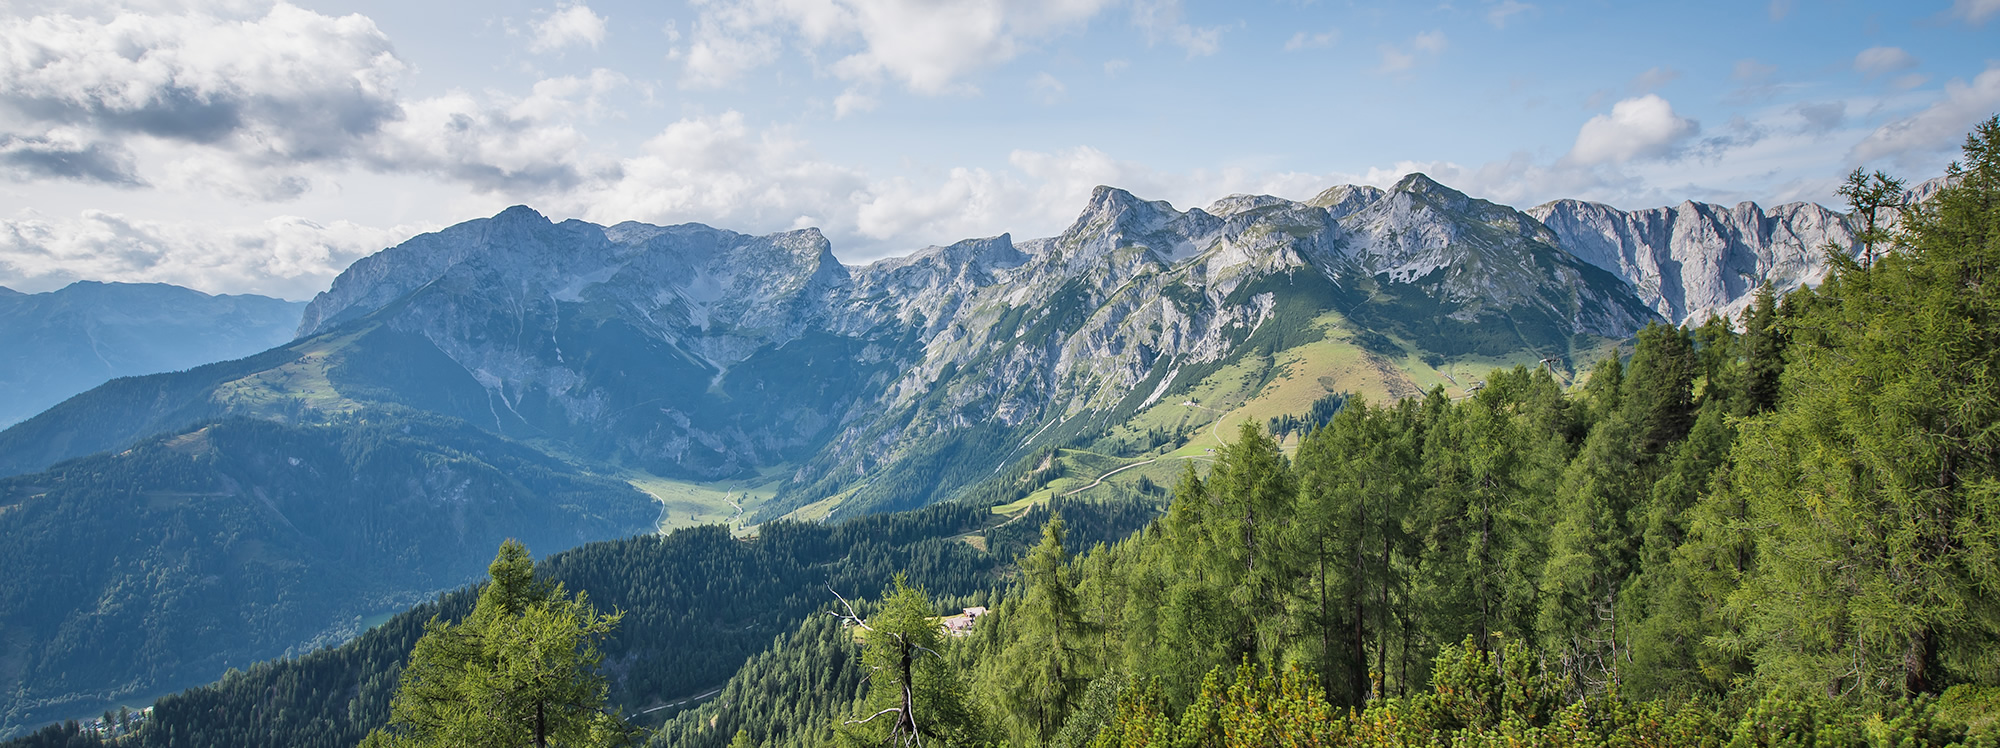 Sommerurlaub in Pfarrwerfen im Salzburgerland und Wandern in der Wanderregion Werfenweng © Bergbahnen Werfenweng / C. Schartner